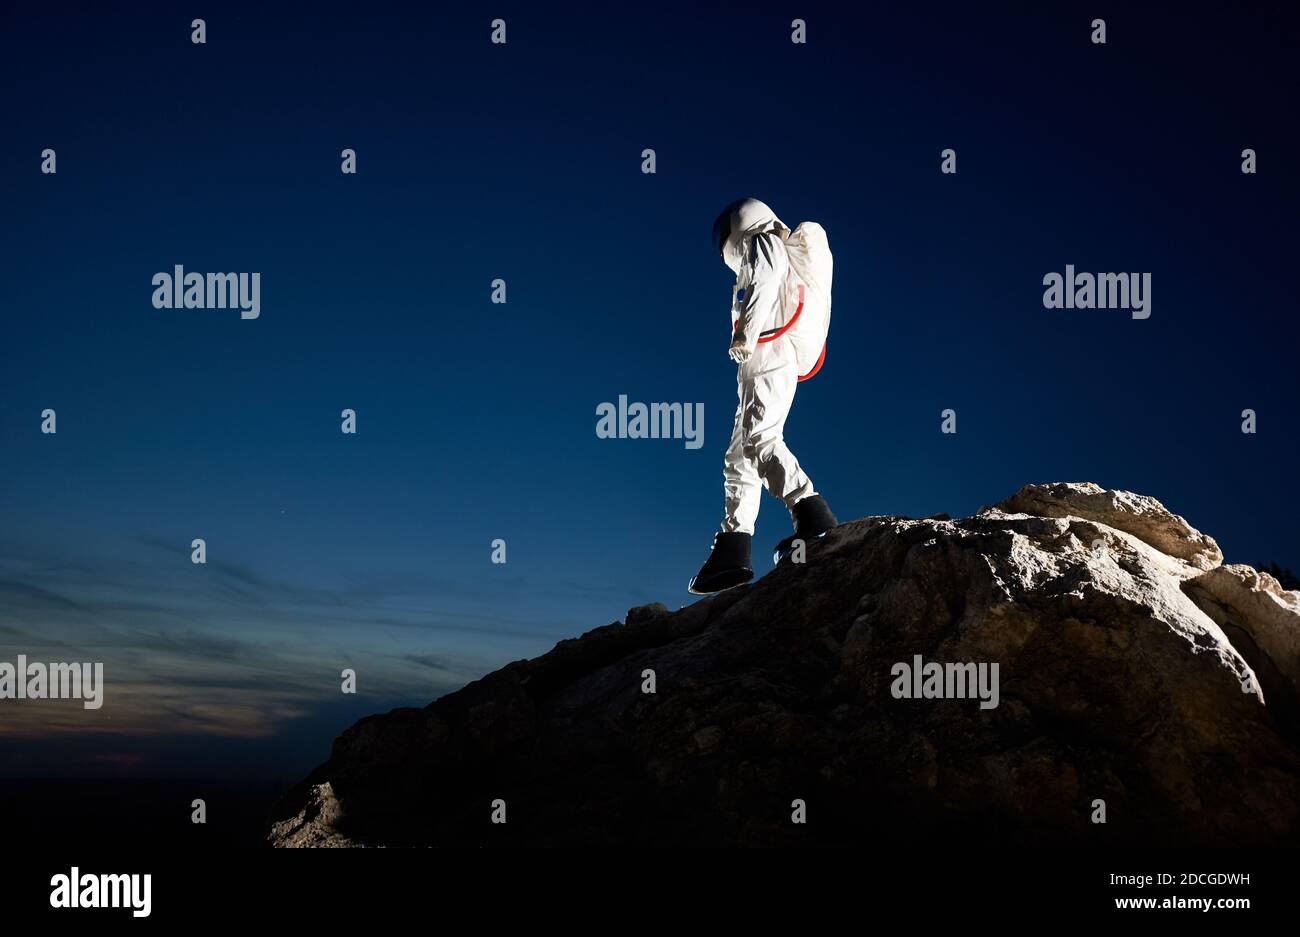 Pleine longueur de cosmonaute descendant la colline rocheuse sous un beau ciel bleu. Voyageur de l'espace portant un costume blanc avec casque. Concept d'exploration spatiale par race humaine. Banque D'Images